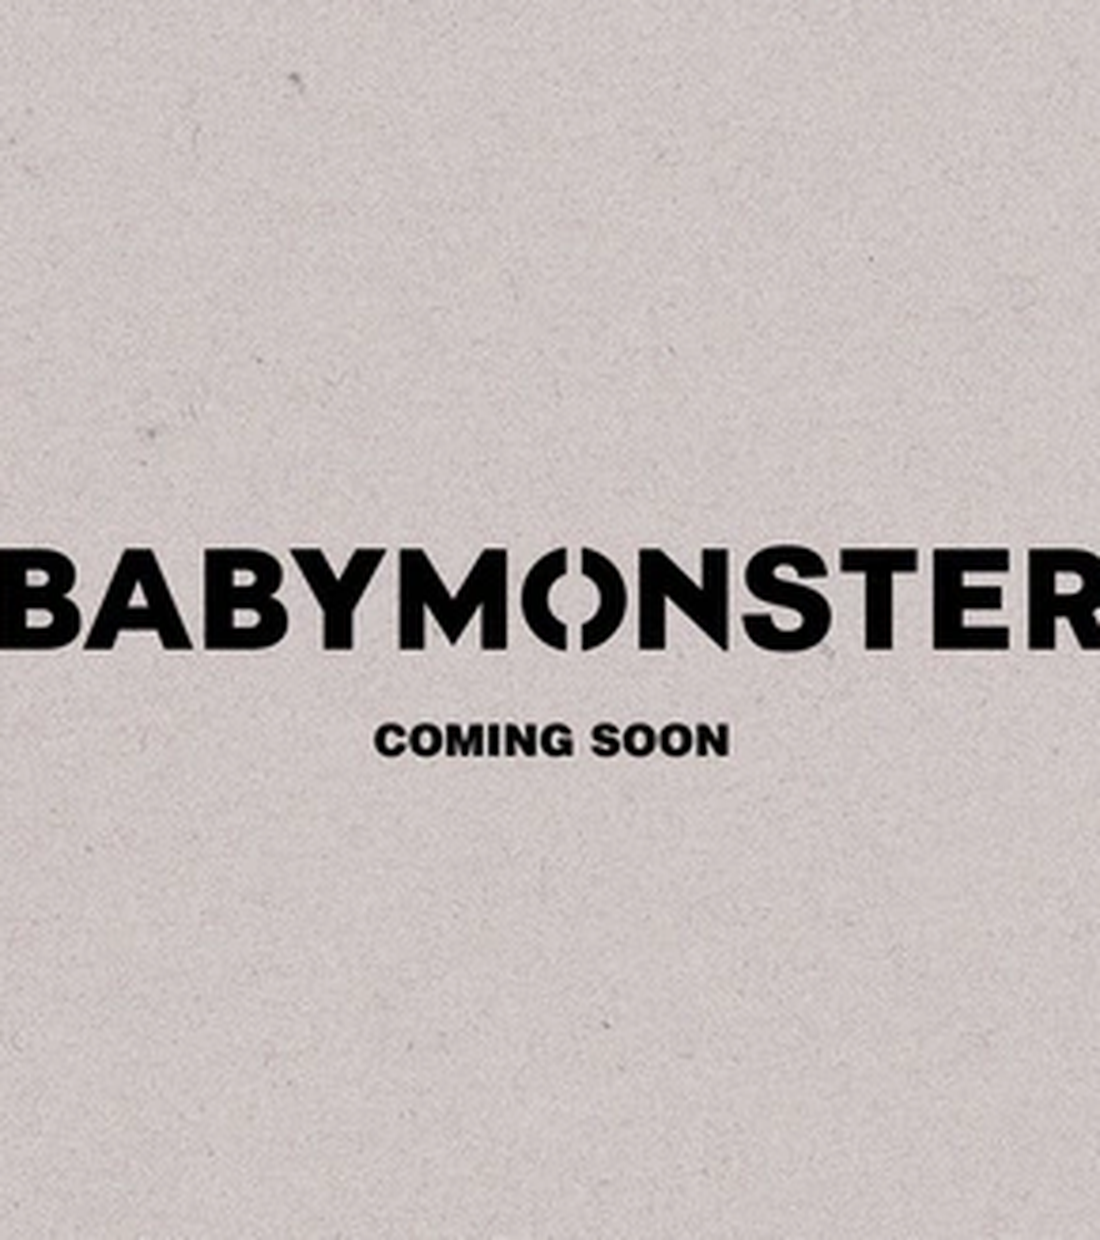 Quảng cáo ra mắt nhóm Babymonster vào tháng 11 của YG Entertainment gây chú ý - Ảnh: YONHAP